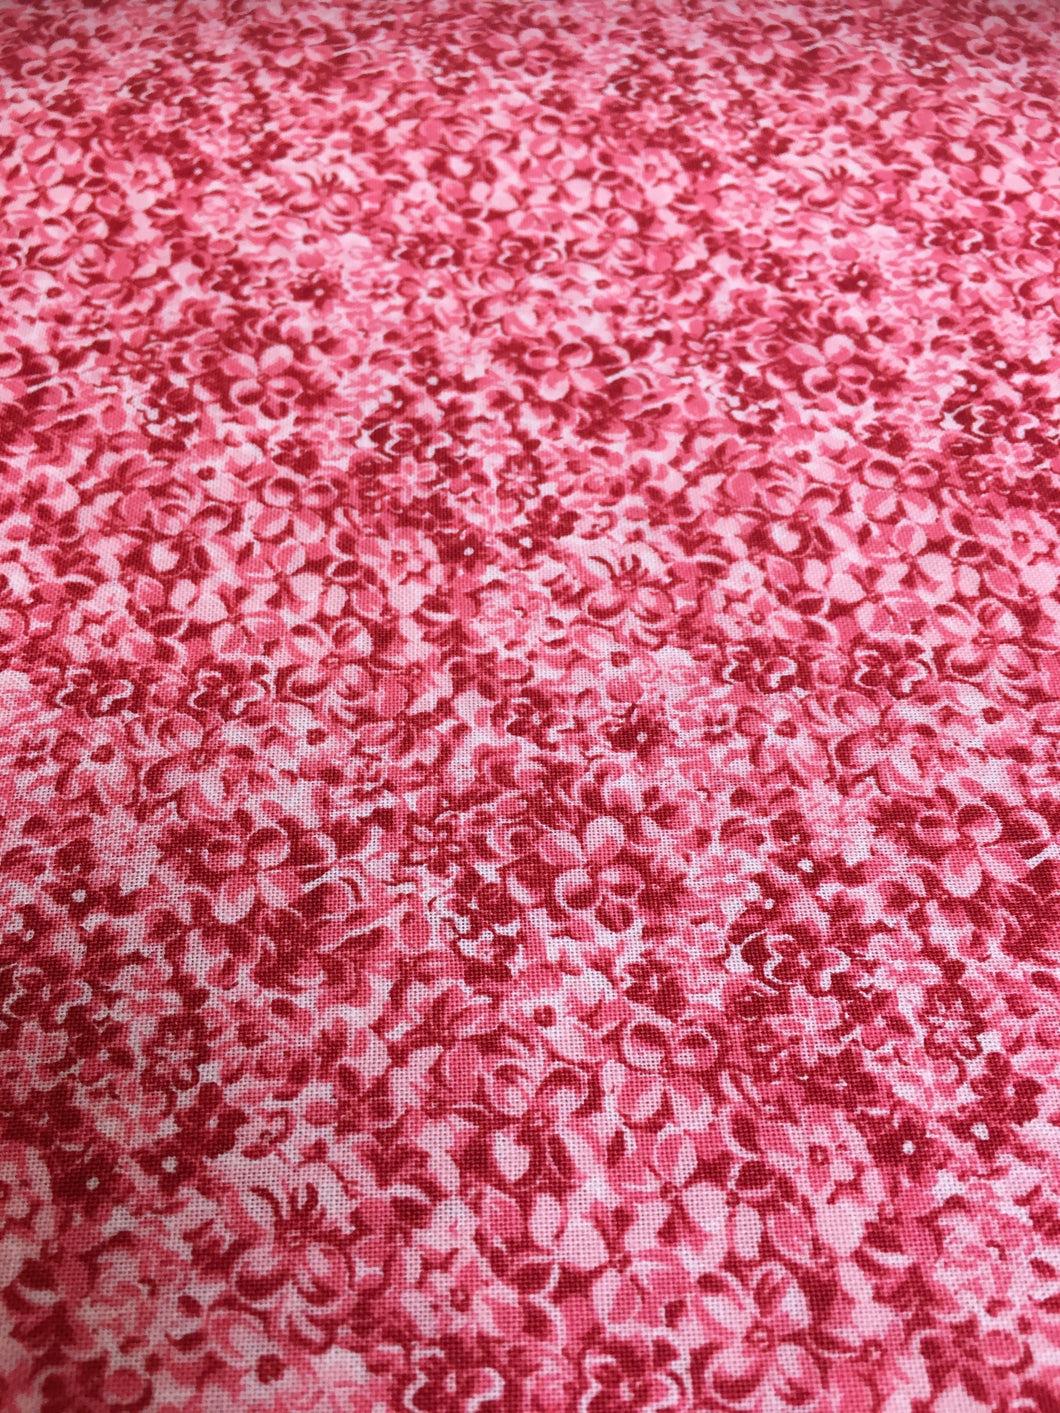 Liberty Emporium - Osaka Blossom - Red Cream